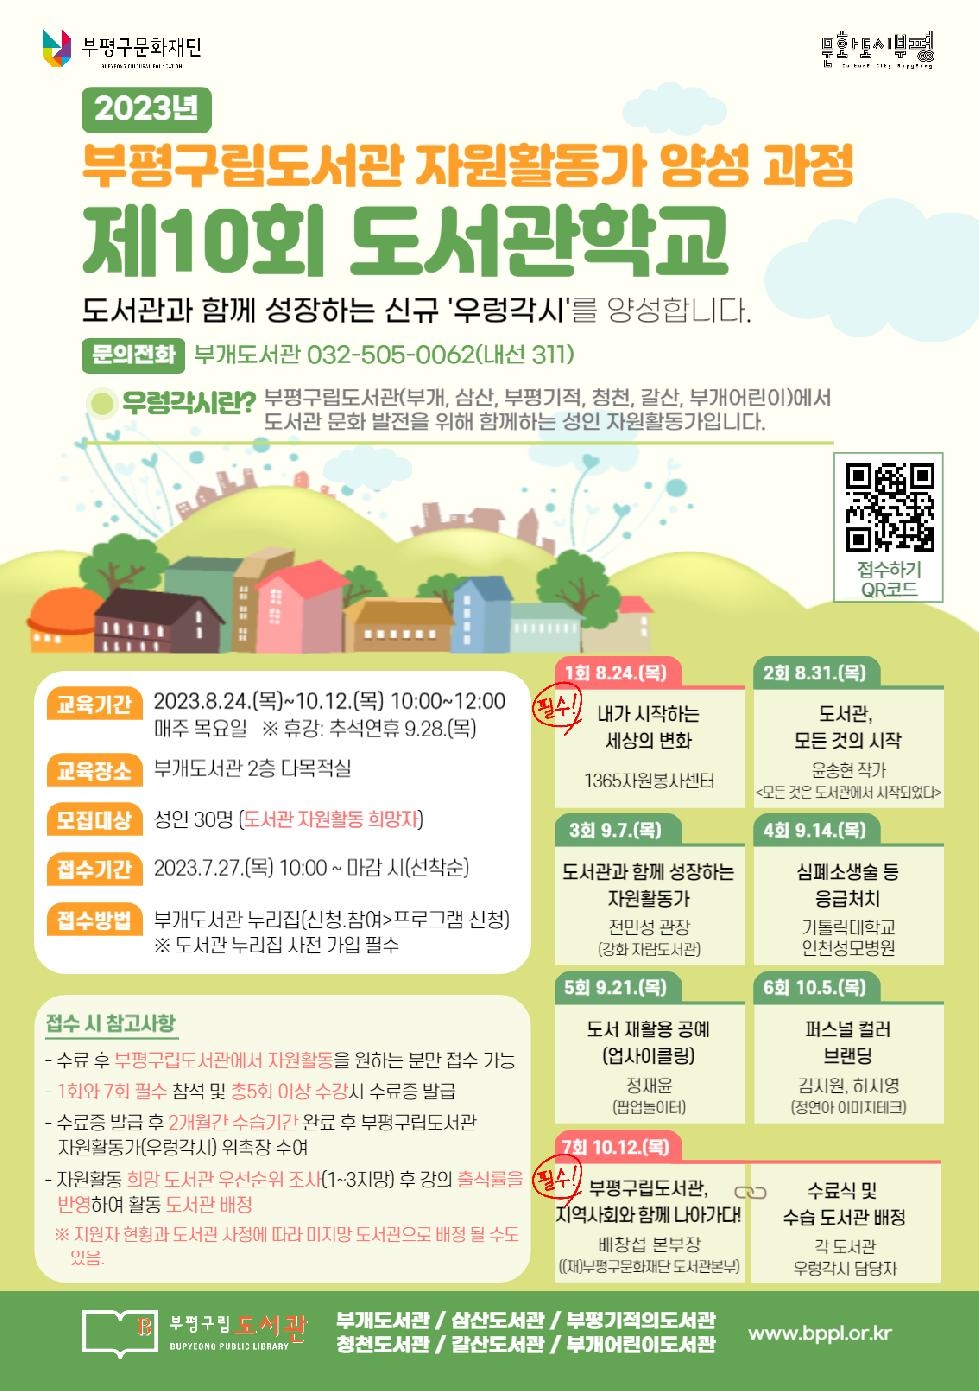 인천 부평구립도서관, 도서관 자원활동가 양성을 위한 ‘제10회 도서관학교